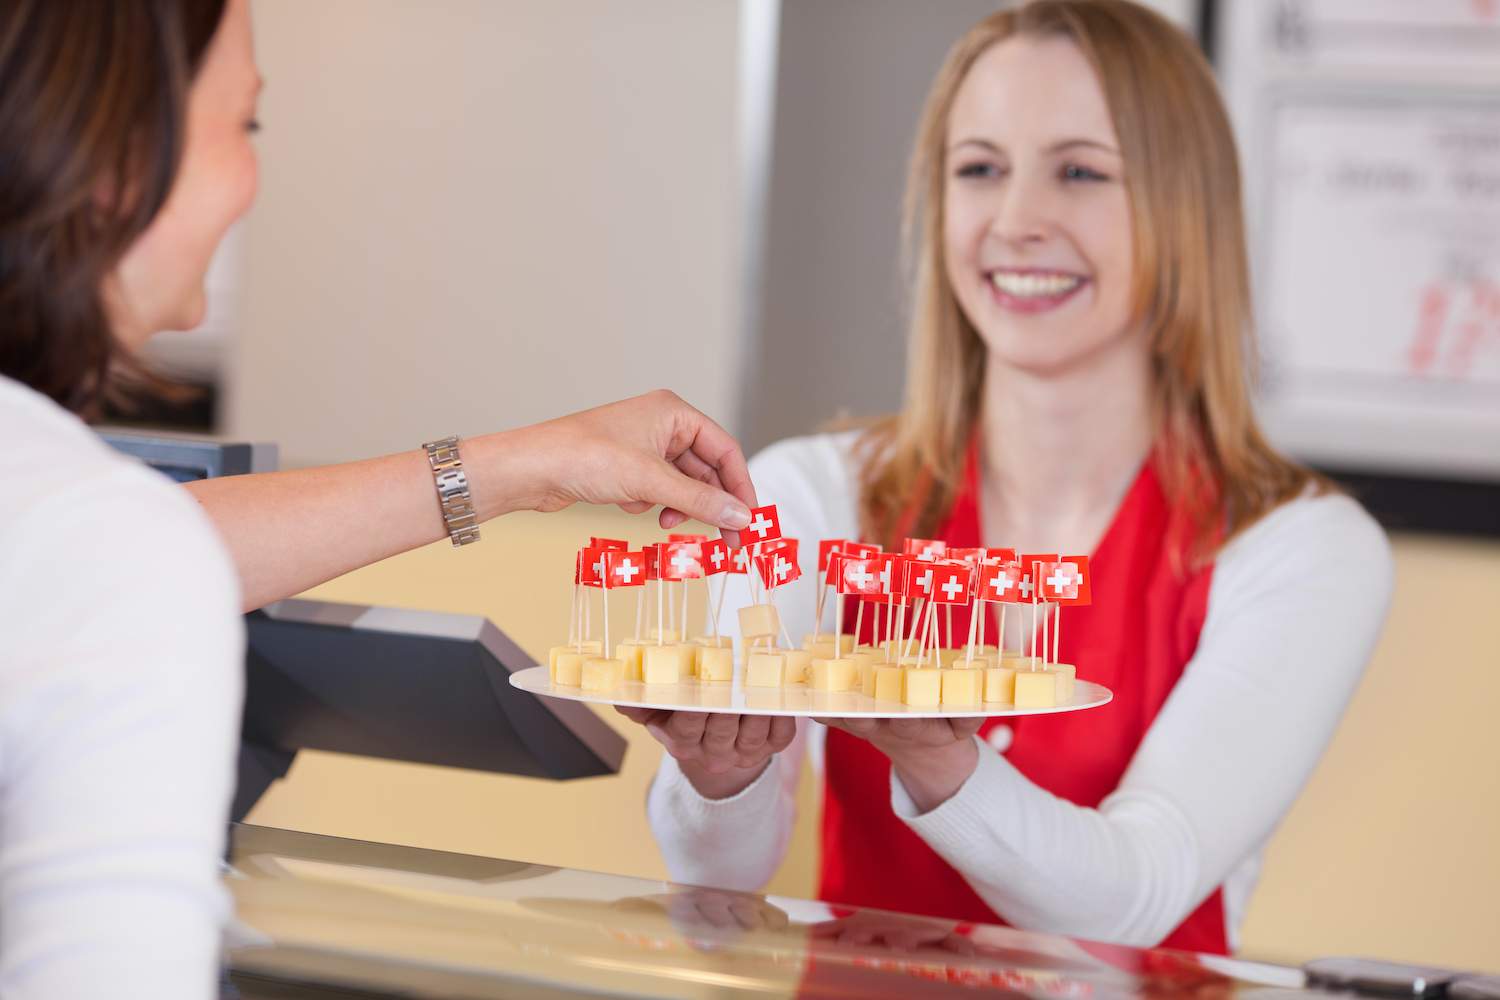 Usmiata promotérka ponúka zákazníčke promo ochutnávku nových syrov.